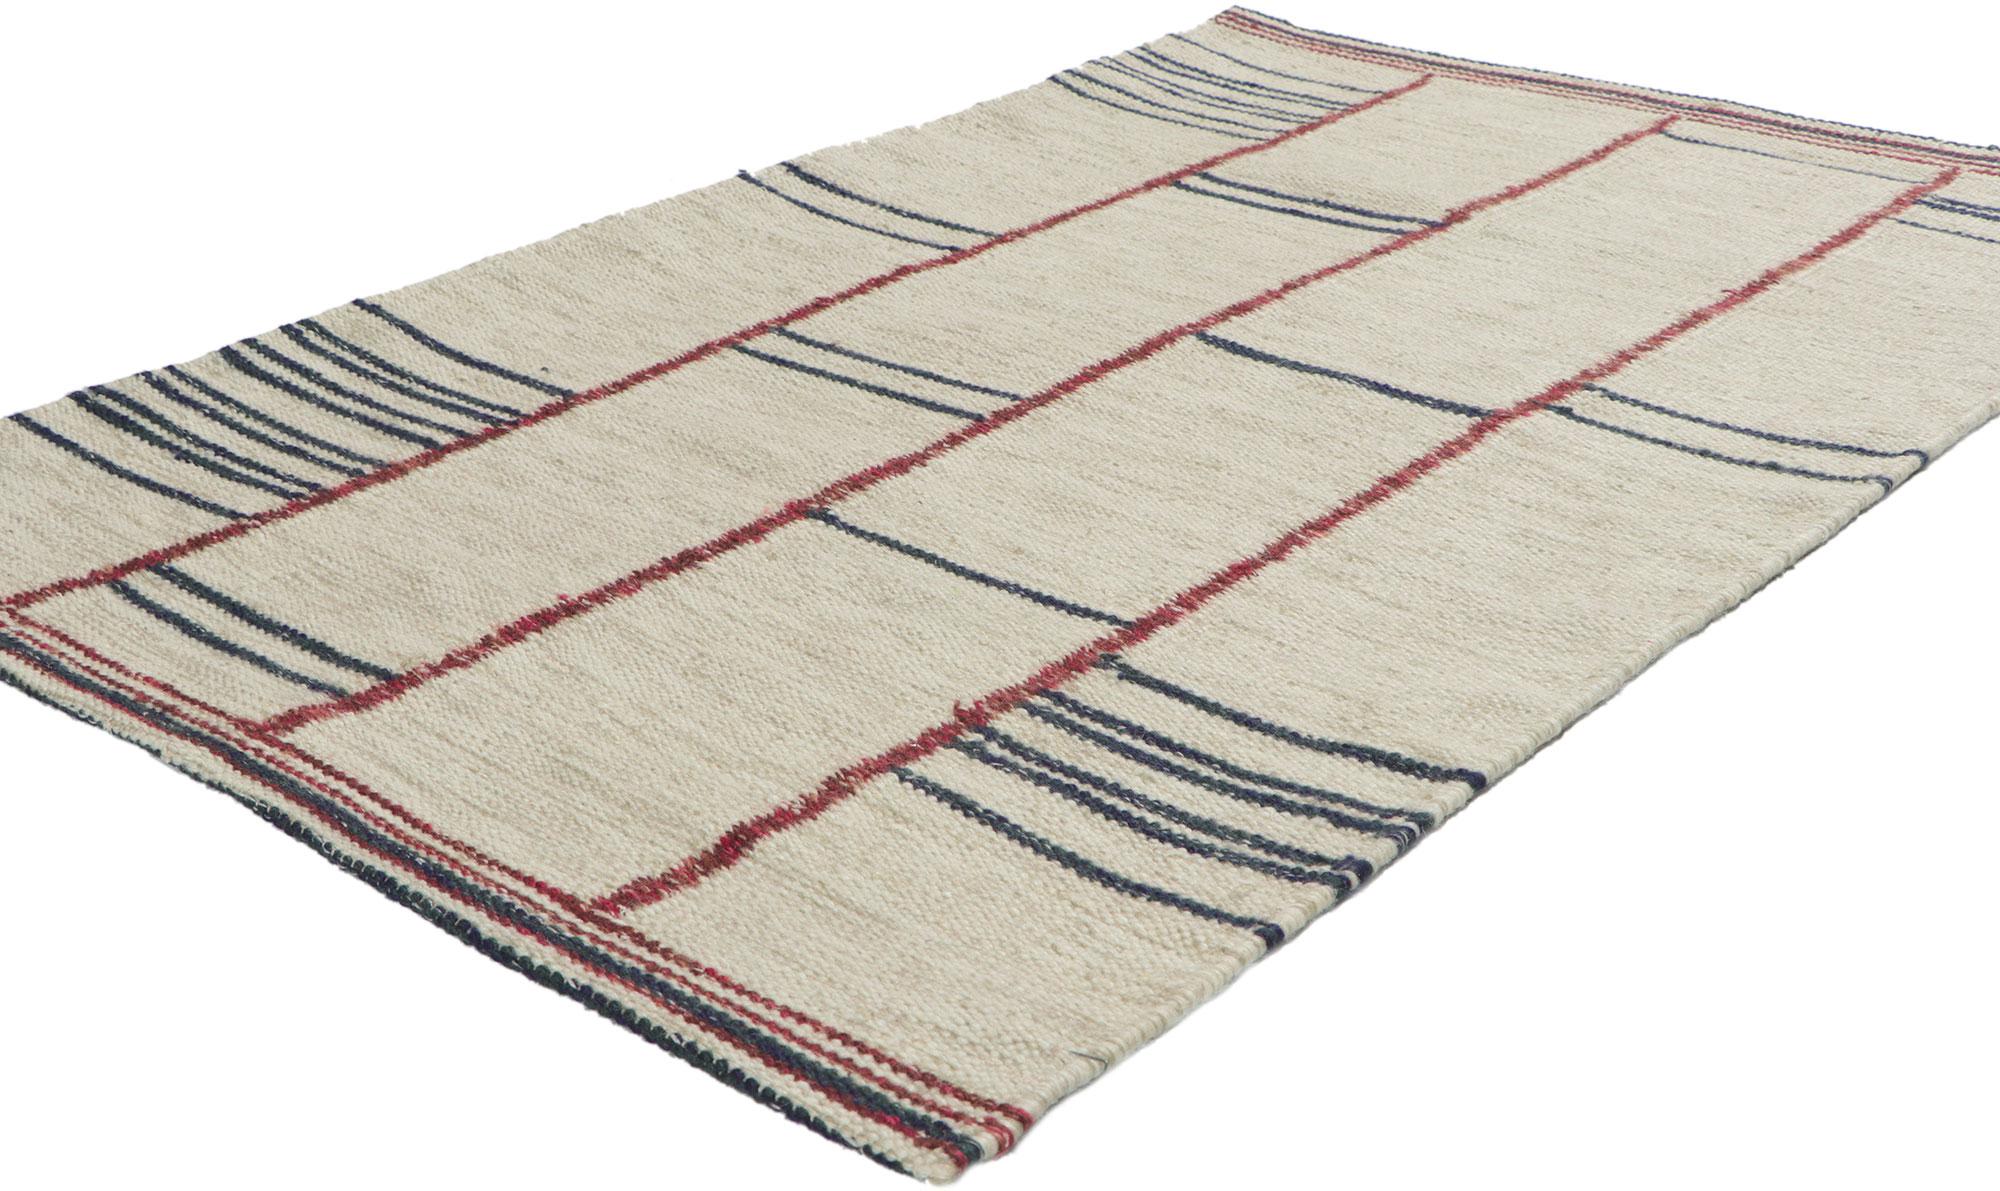 30805 Neuer schwedisch inspirierter Kilim-Teppich 03'00 x 04'10. Mit seiner linearen Kunstform und seiner ausgewogenen Asymmetrie vermittelt dieser handgewebte, schwedisch inspirierte Kilim-Teppich aus Wolle ein Gefühl der Behaglichkeit, ohne